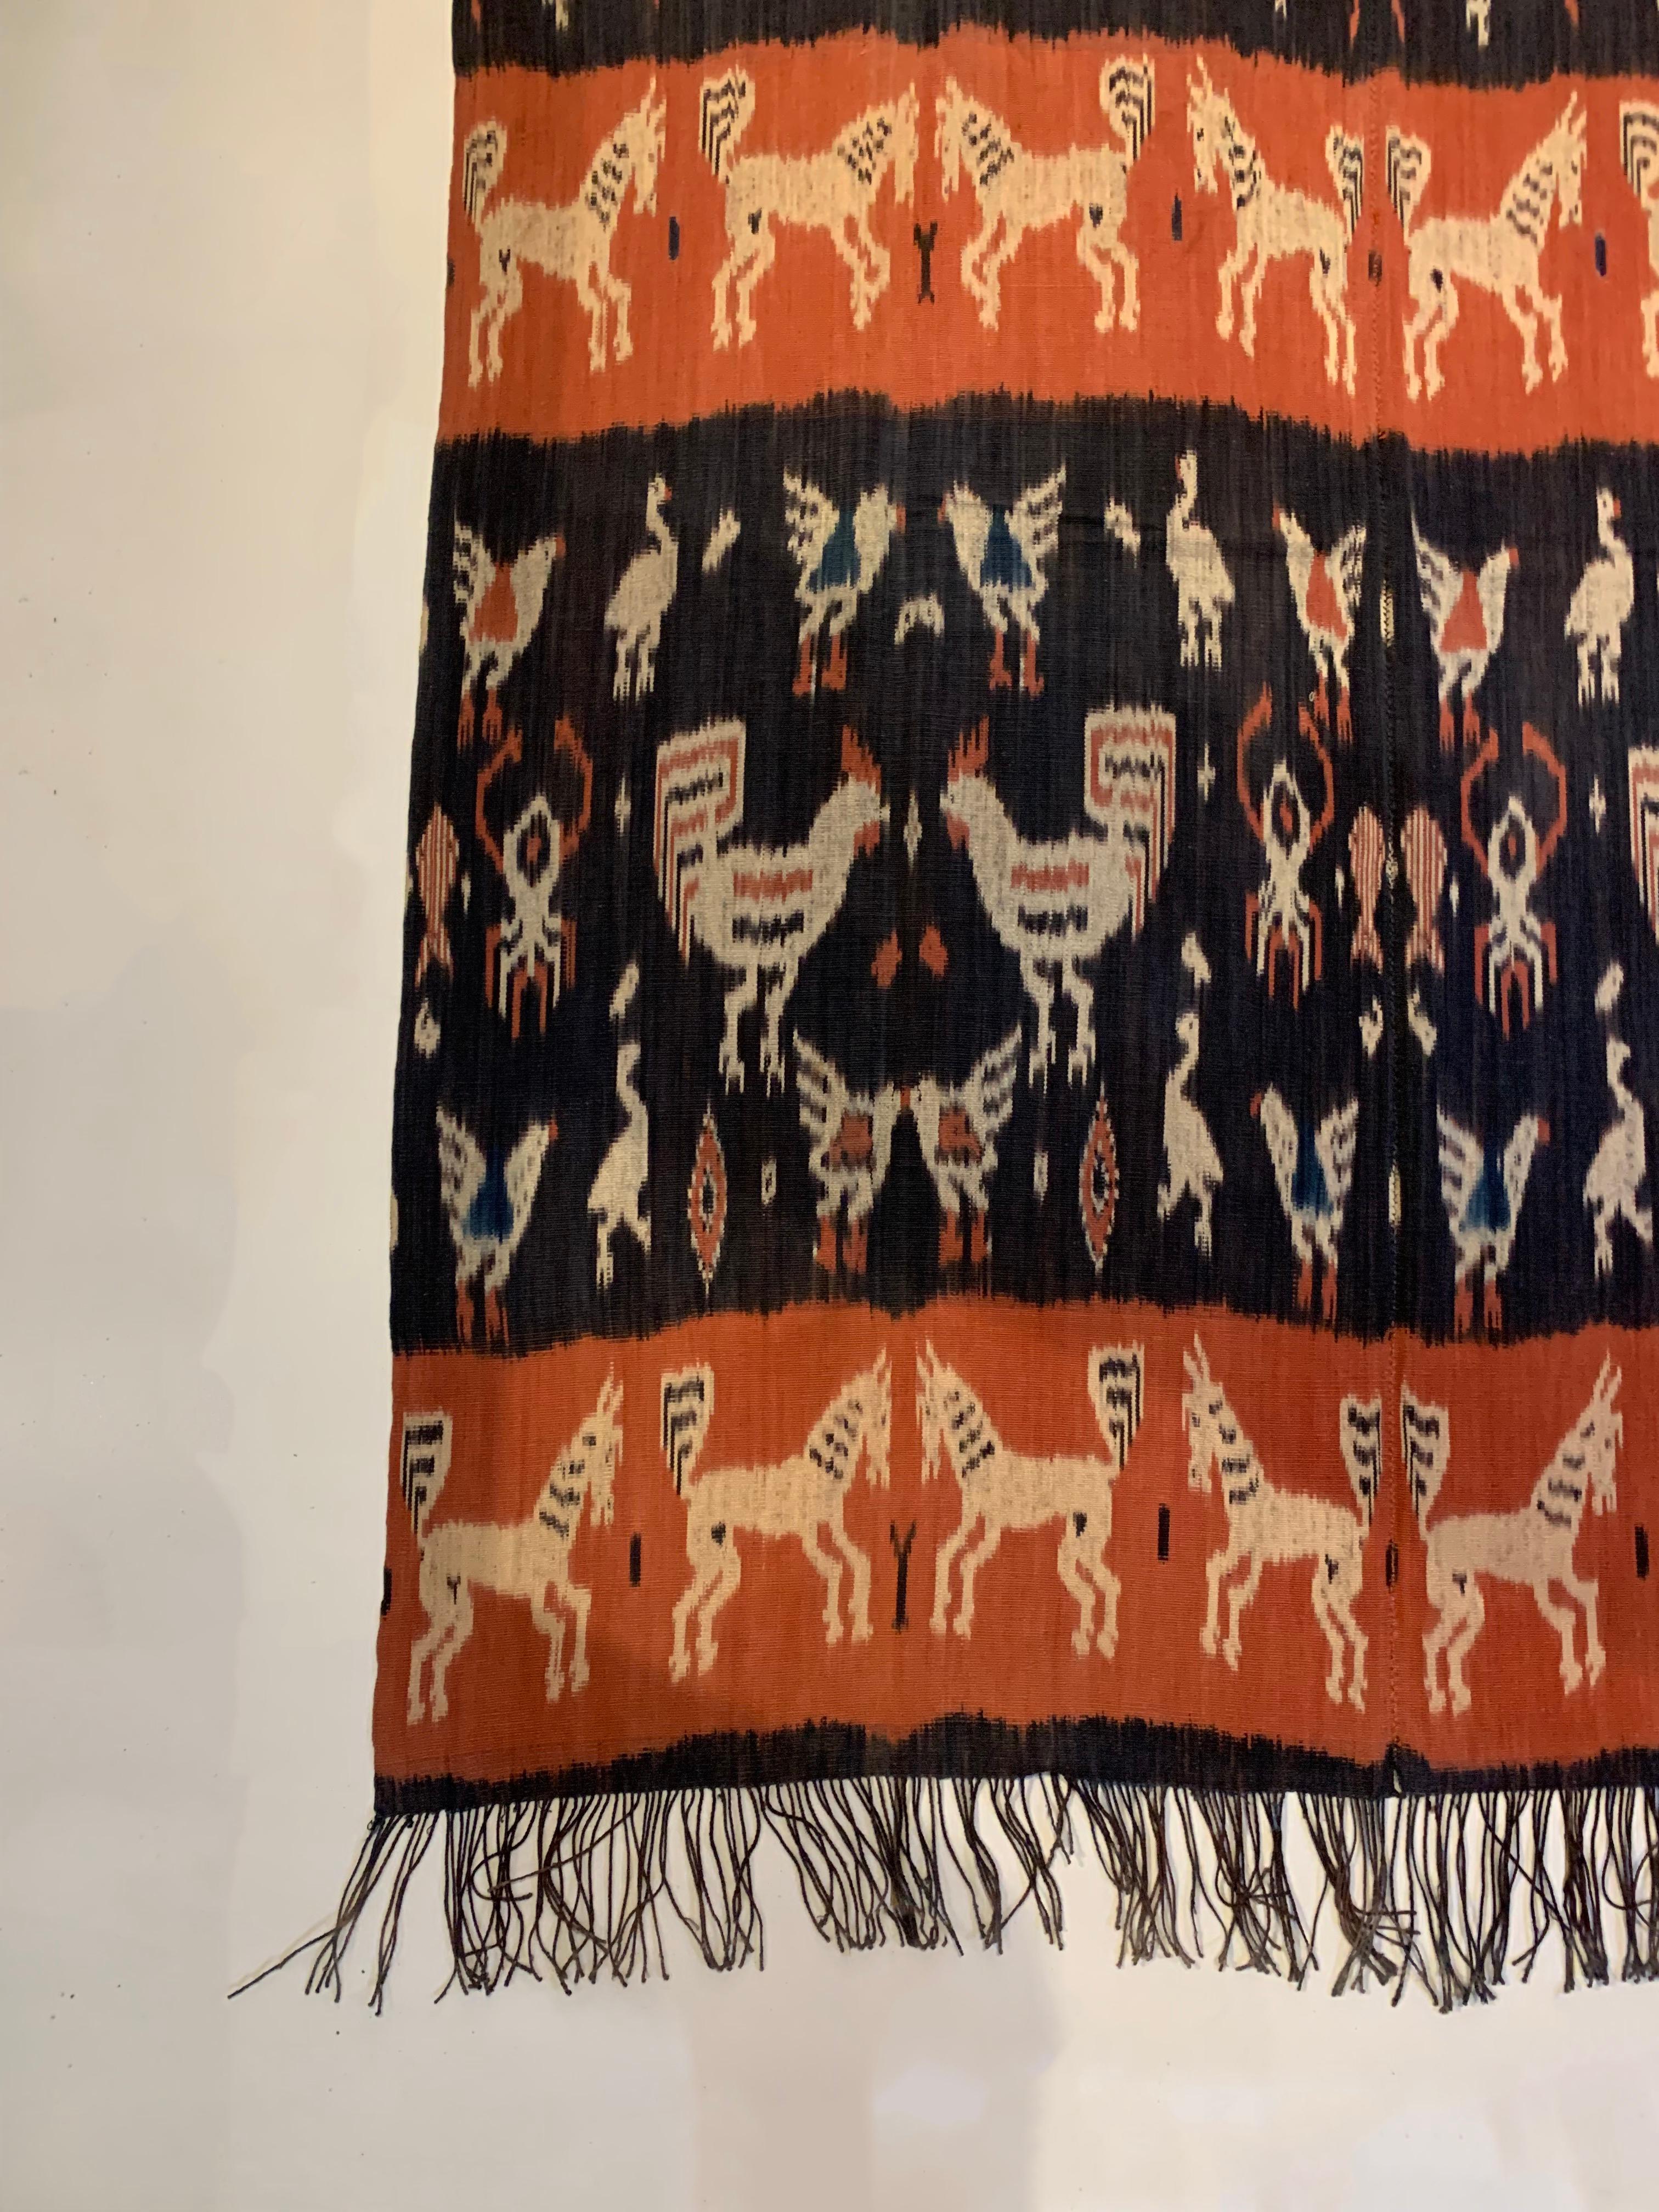 Dieses Ikat-Textil stammt von der Insel Sumba in Indonesien. Es wird mit natürlich gefärbten Garnen nach einer seit Generationen überlieferten Methode handgewebt. Es zeichnet sich durch eine atemberaubende Vielfalt an unterschiedlichen